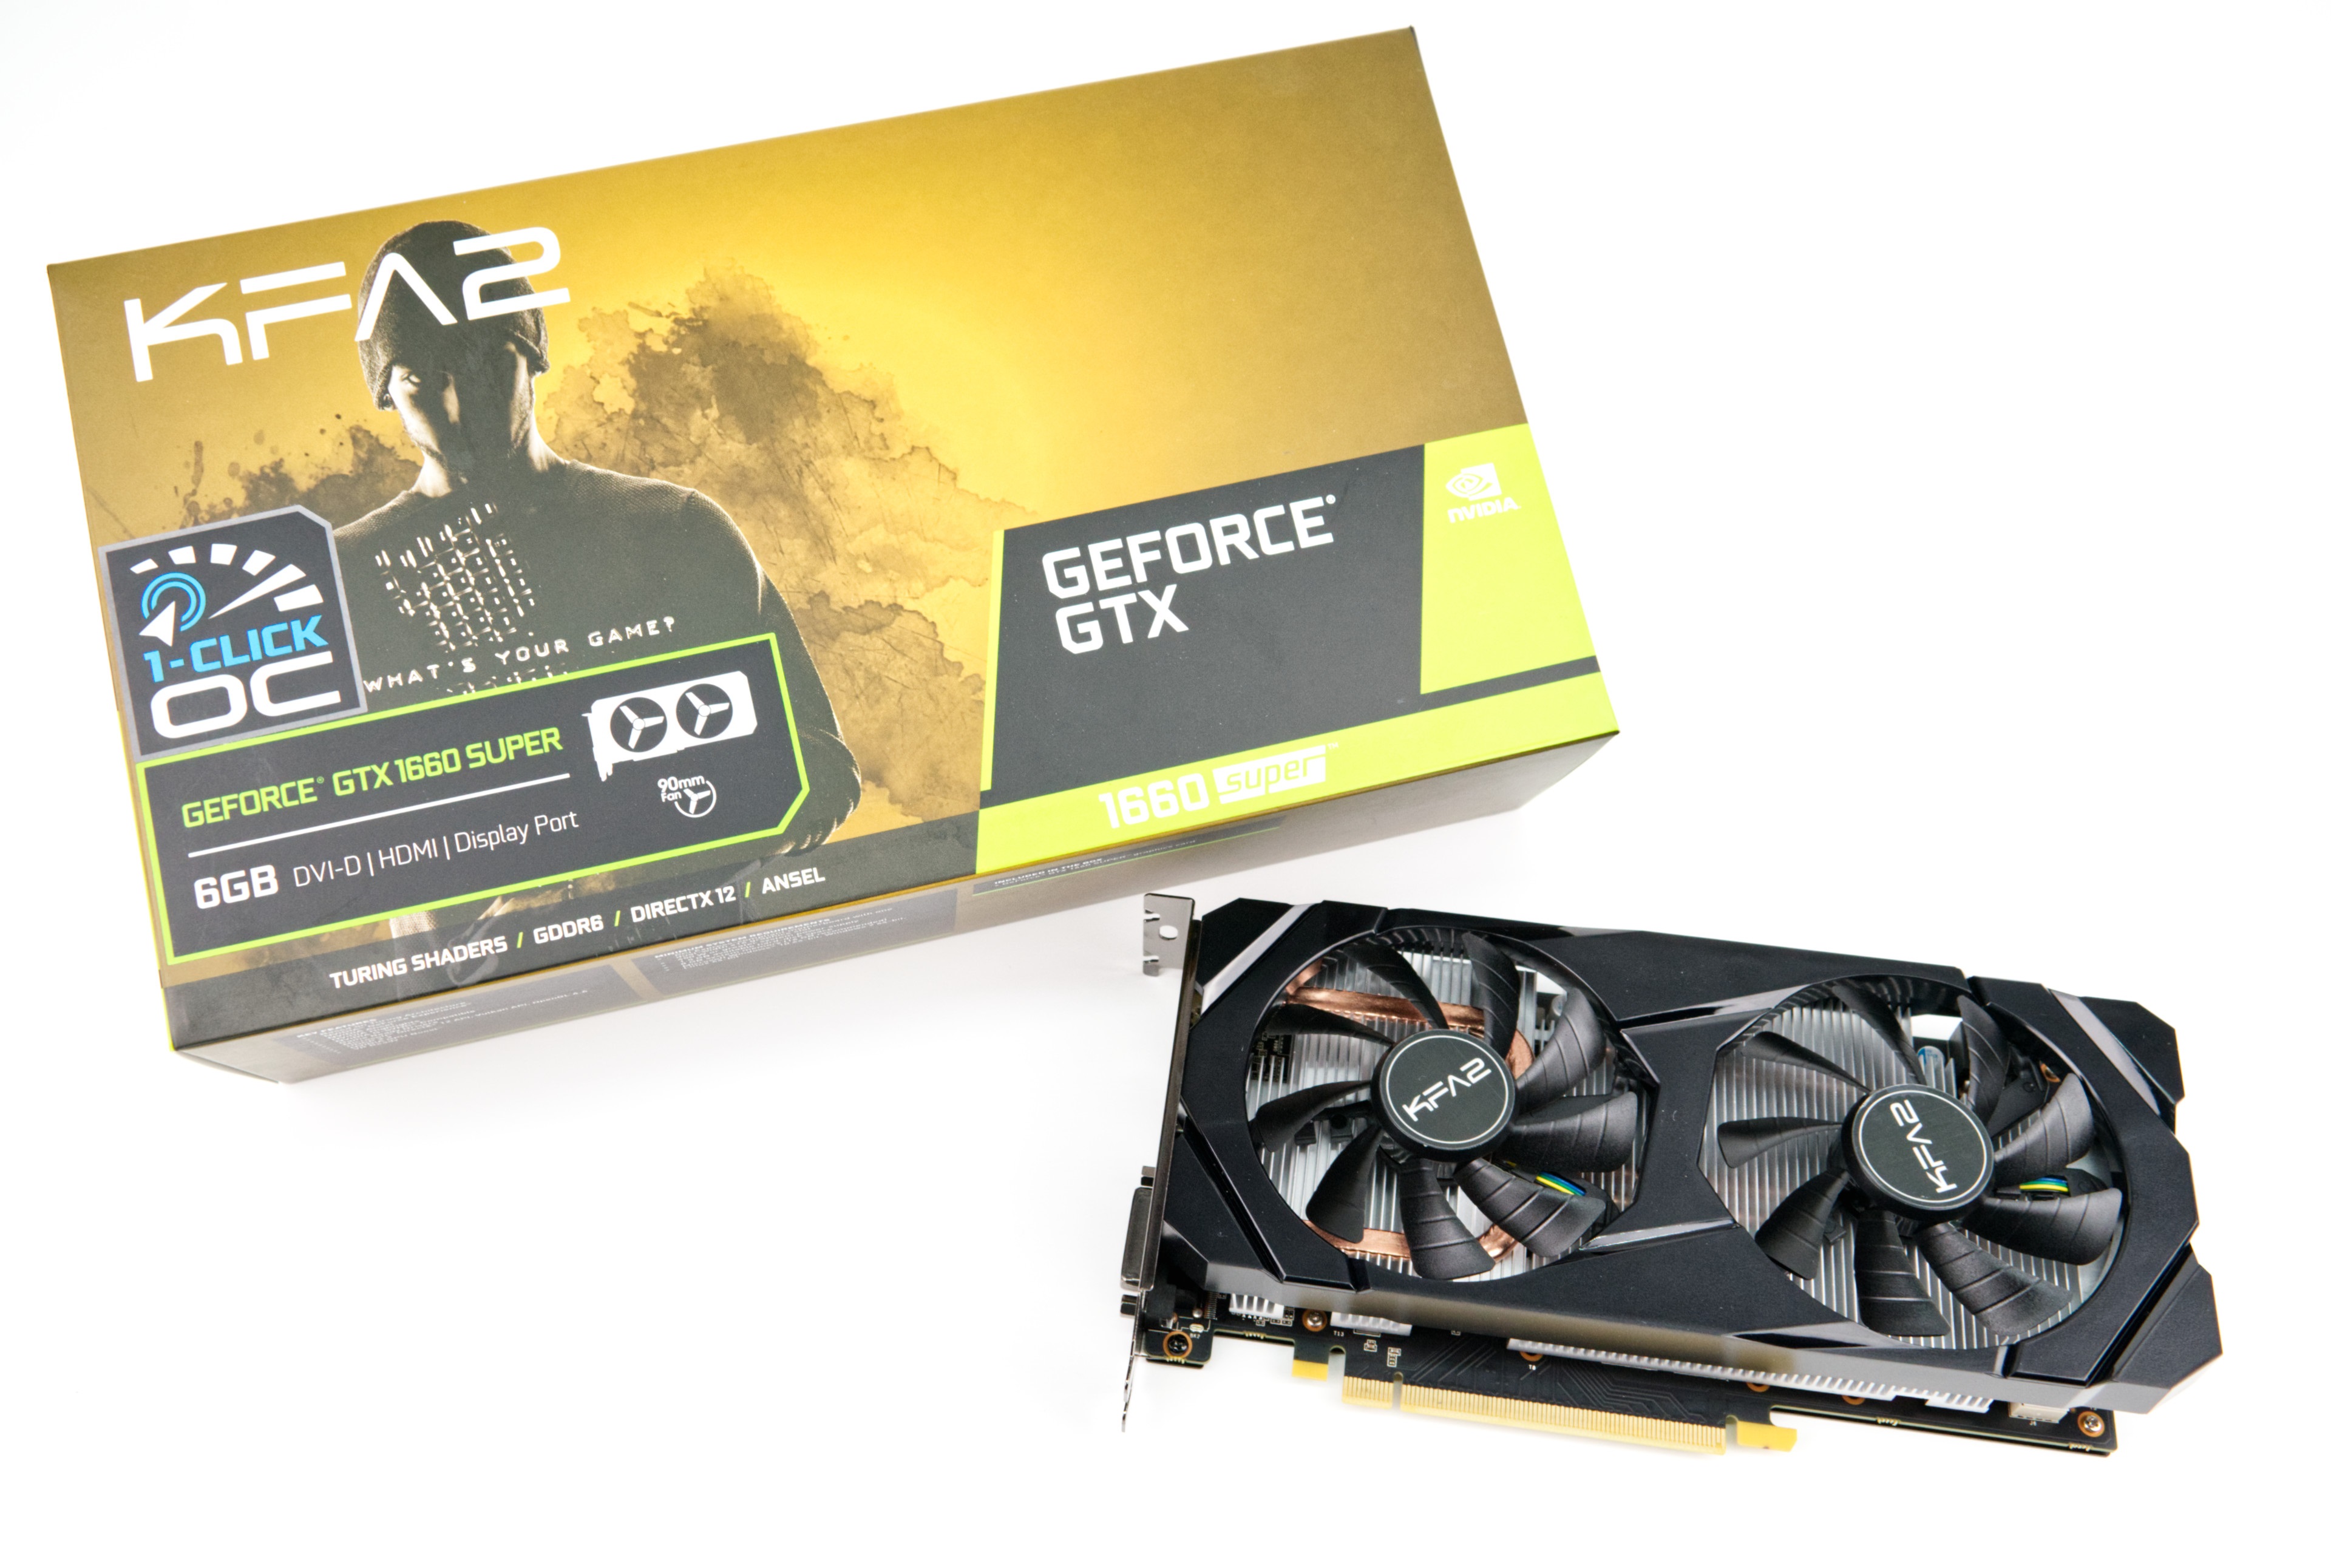 KFA2 GeForce GTX SUPER Desktop GPU Review: The GTX 16 series also receives a SUPER upgrade - NotebookCheck.net Reviews